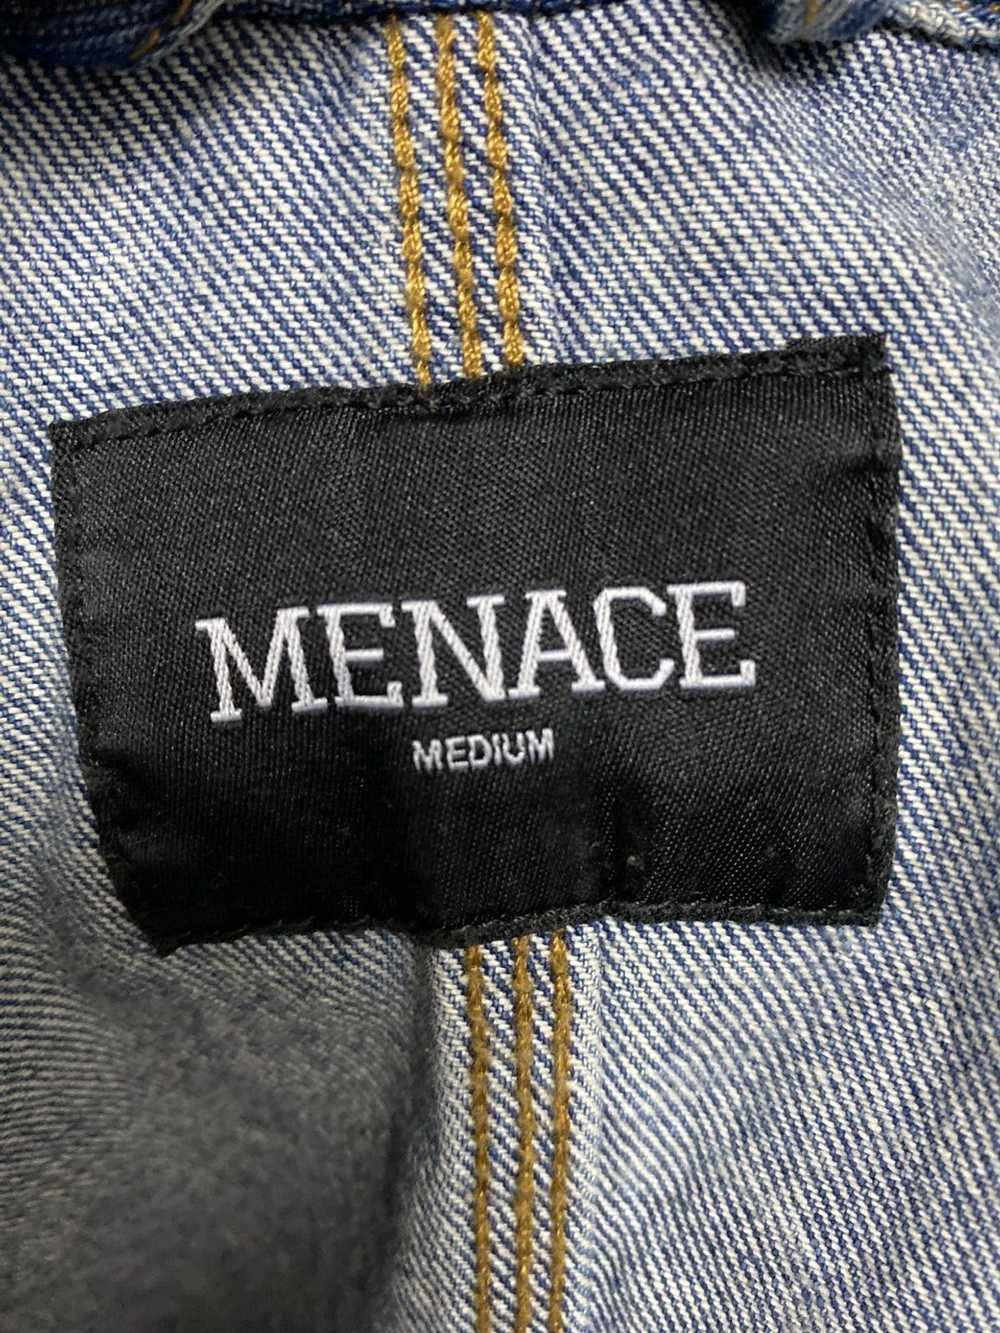 Menace Menace Los Angeles, Paisley Denim jacket - image 4